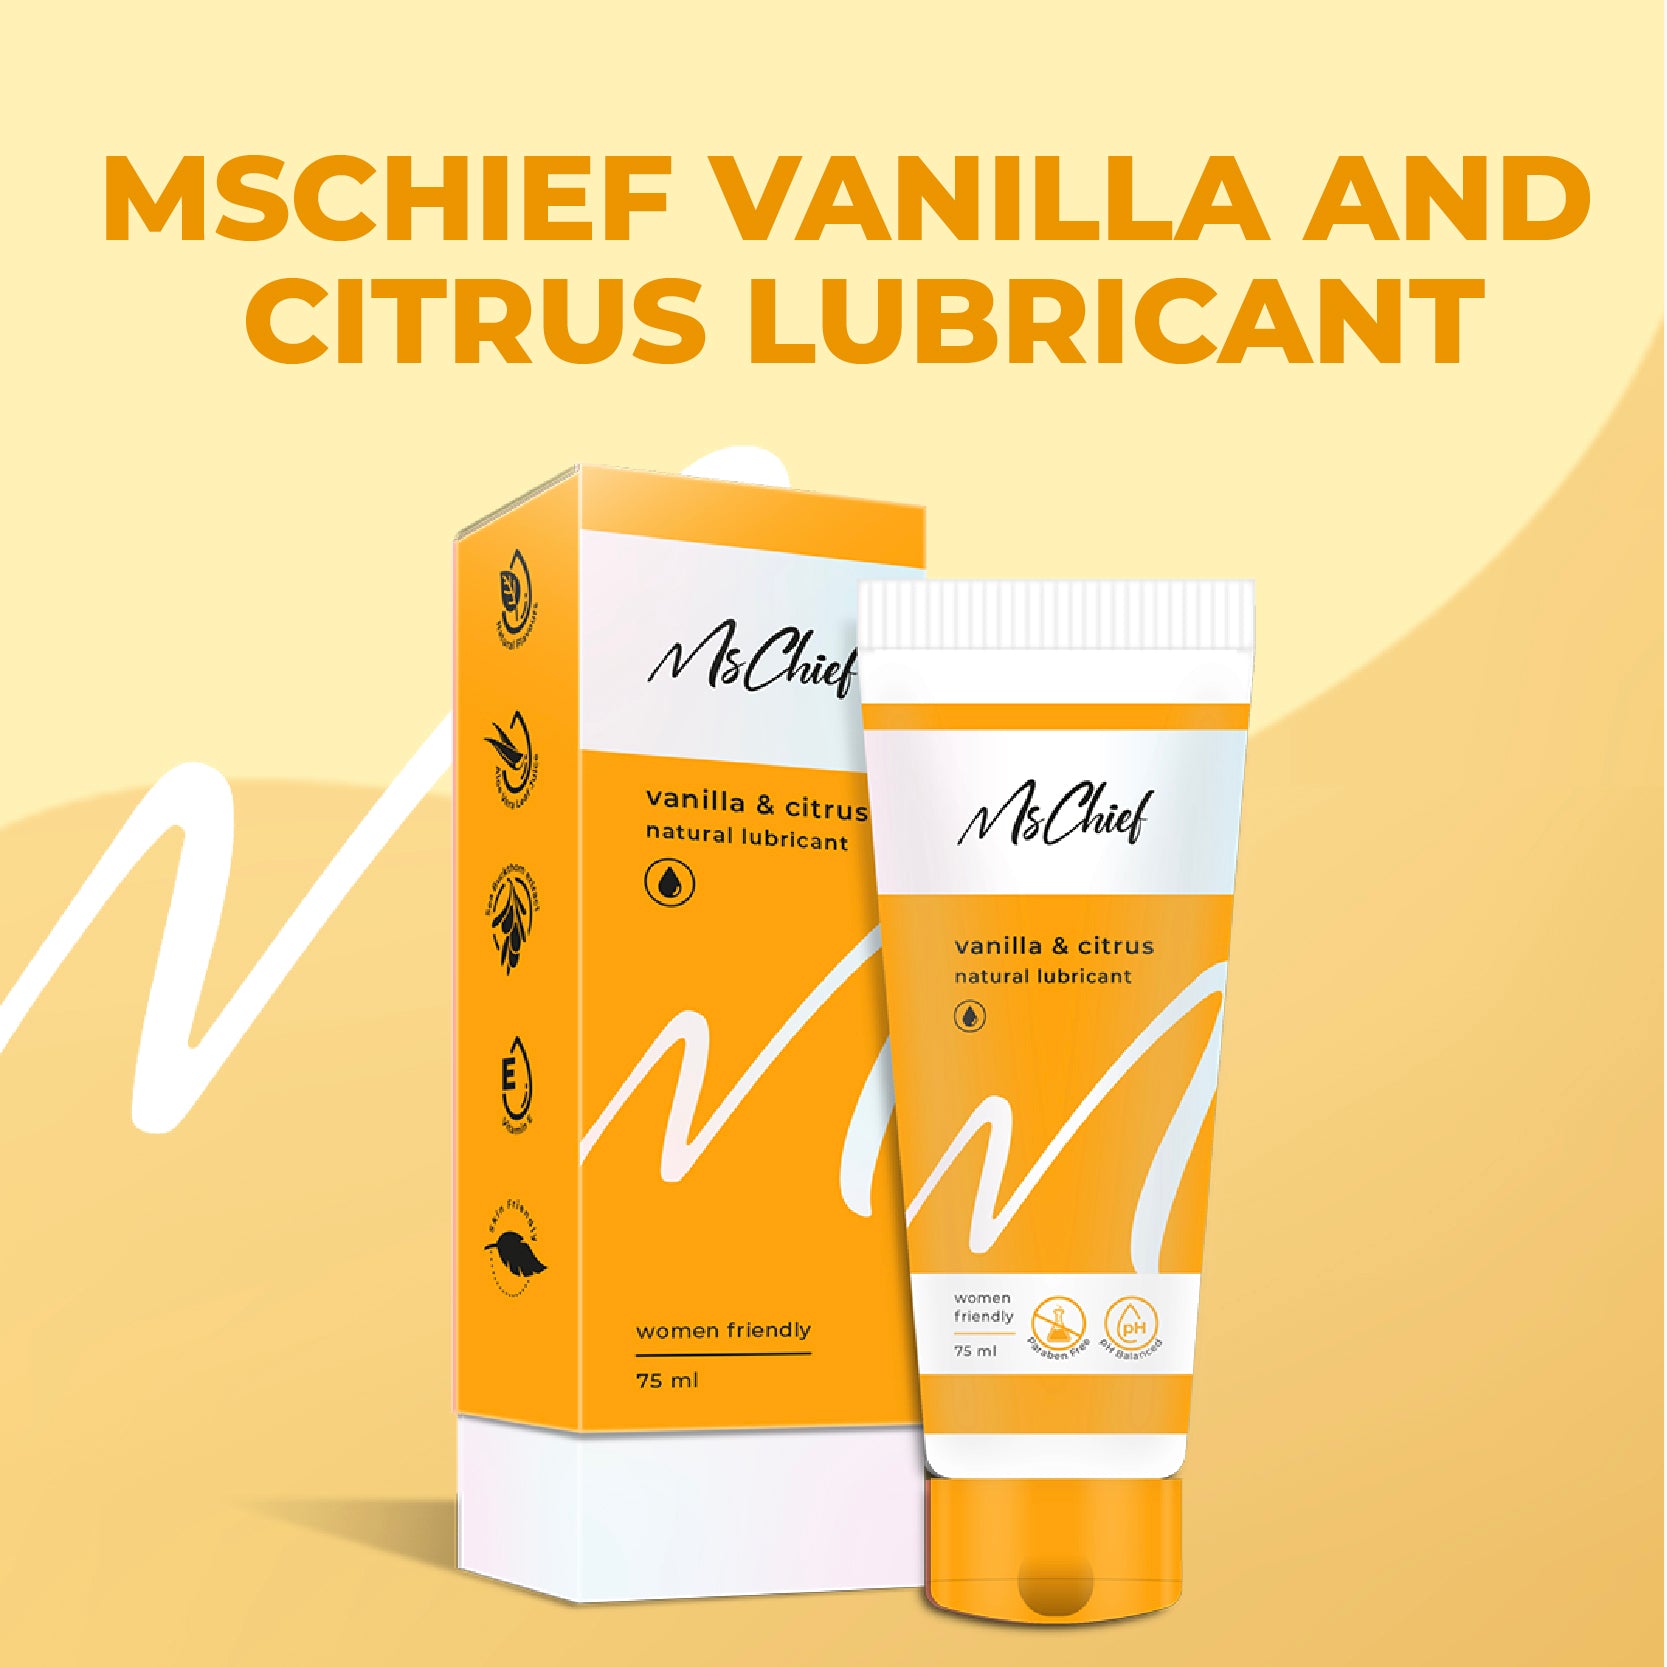 Buy Mschief Vanilla & Citrus Flavoured Lubricants for Women in India